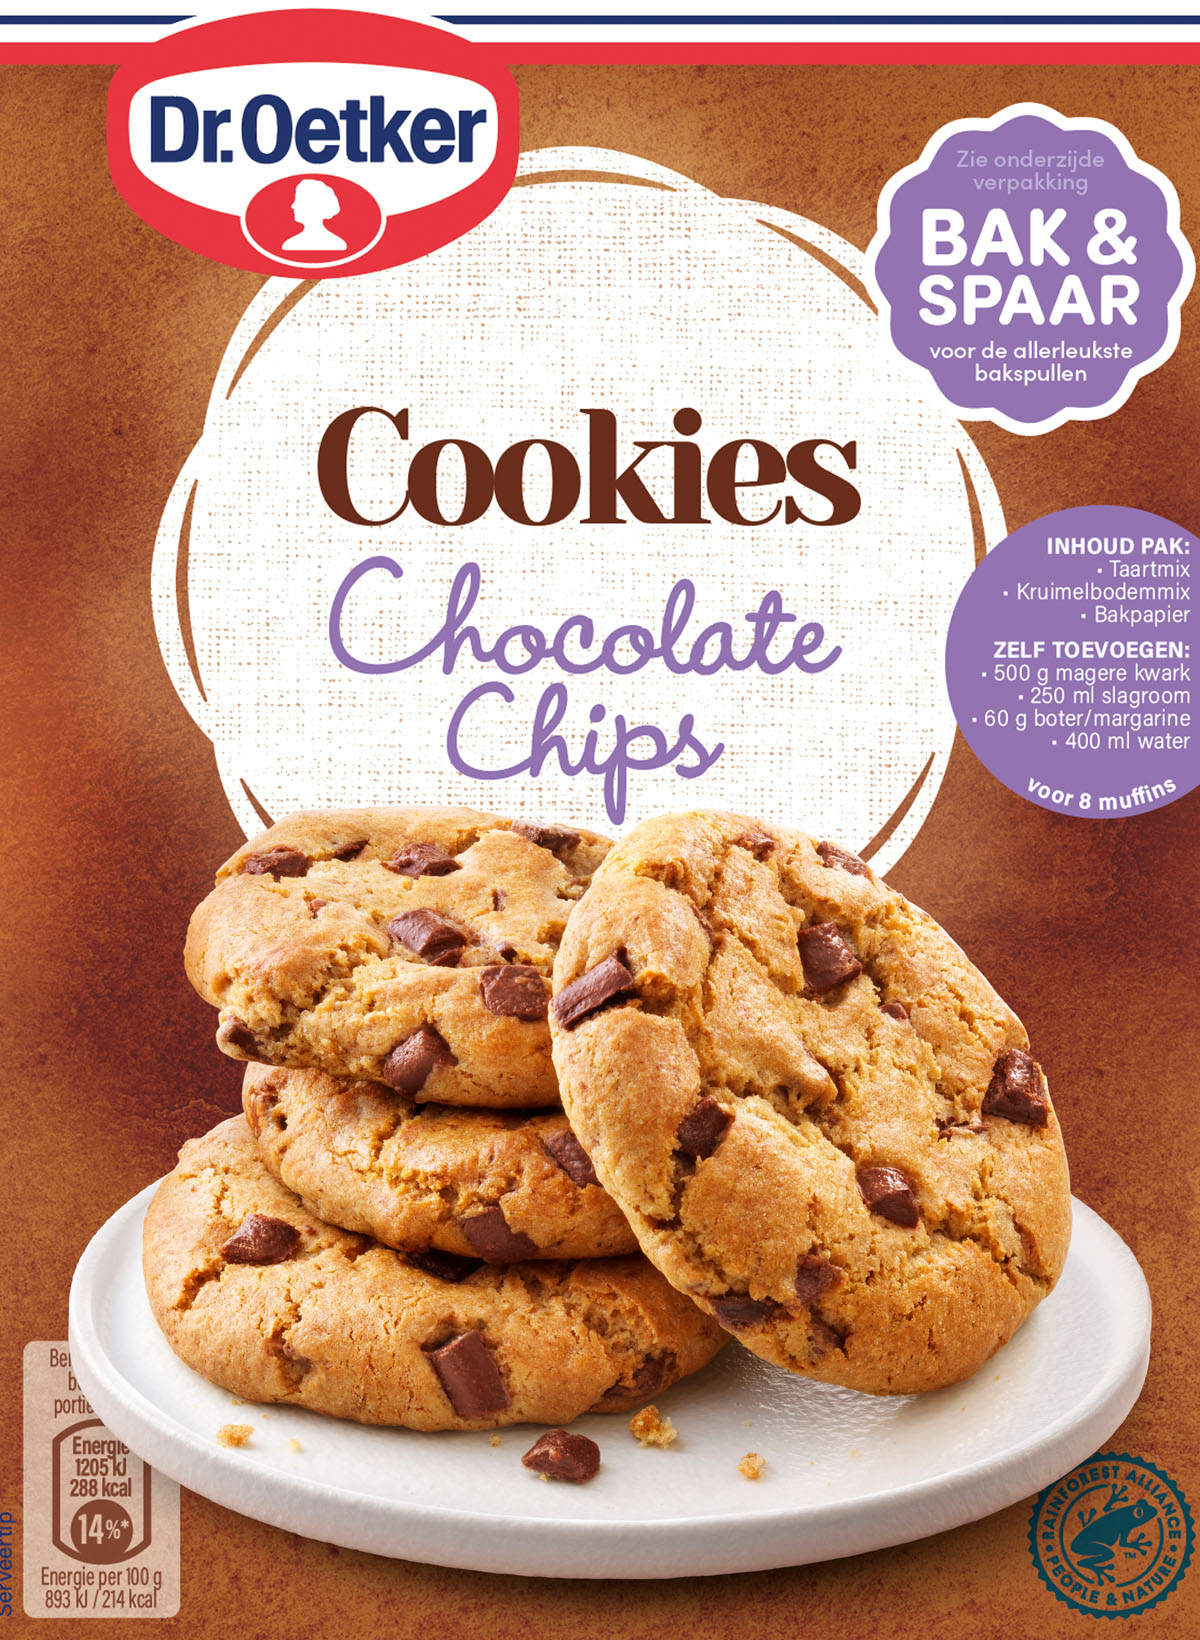 Verpakkingsfotografie van Dr Oetker chocolate chips cookies door STUDIO_M foodfotograaf